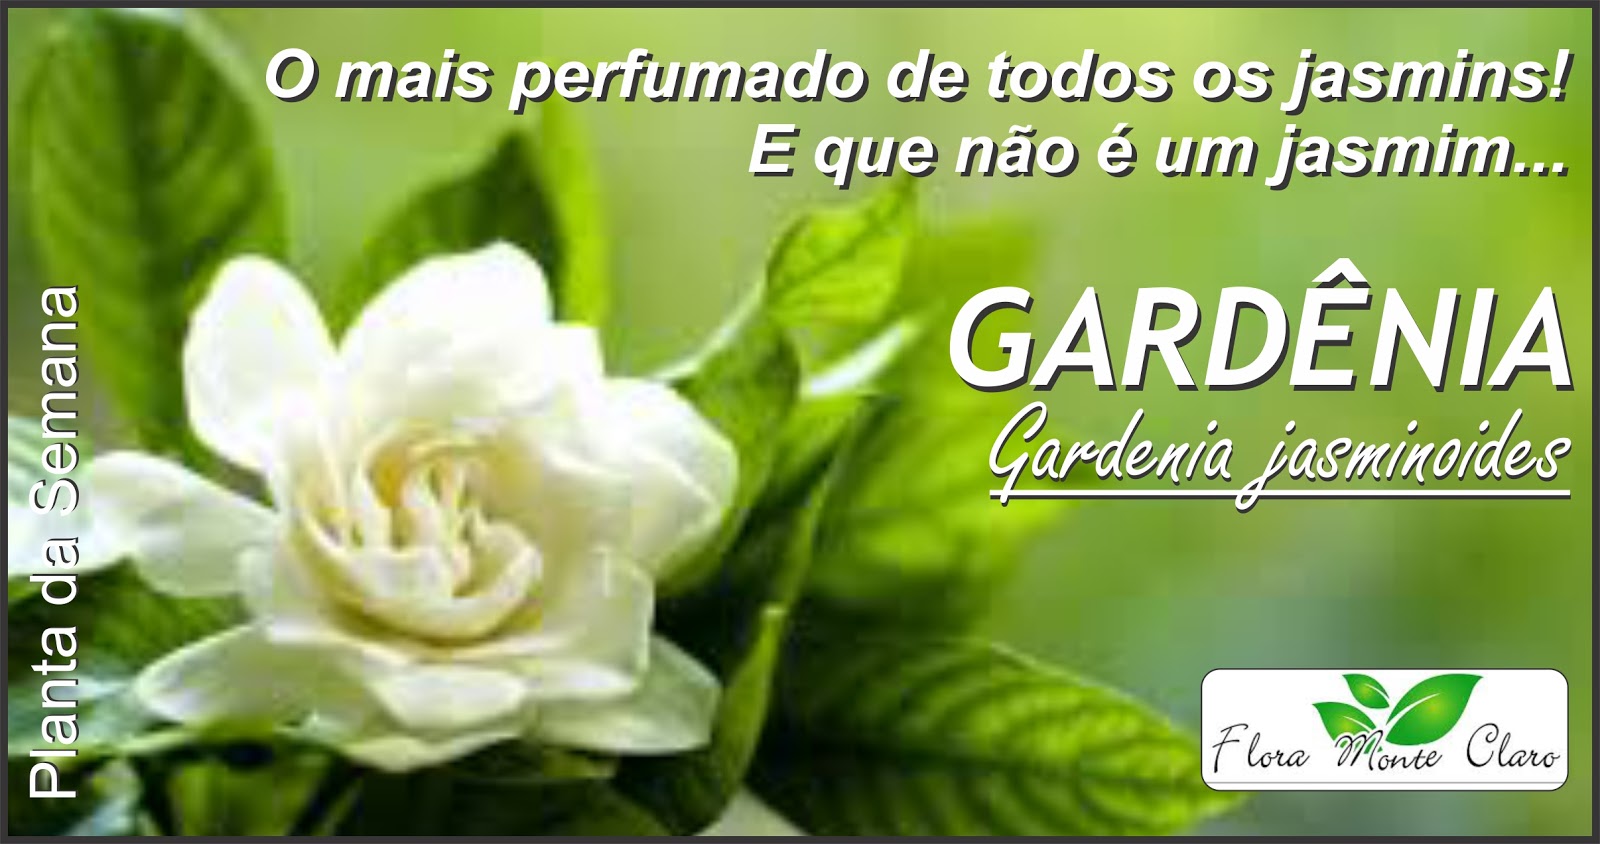 Planta da semana: Gardênia - Gardenia jasminoides